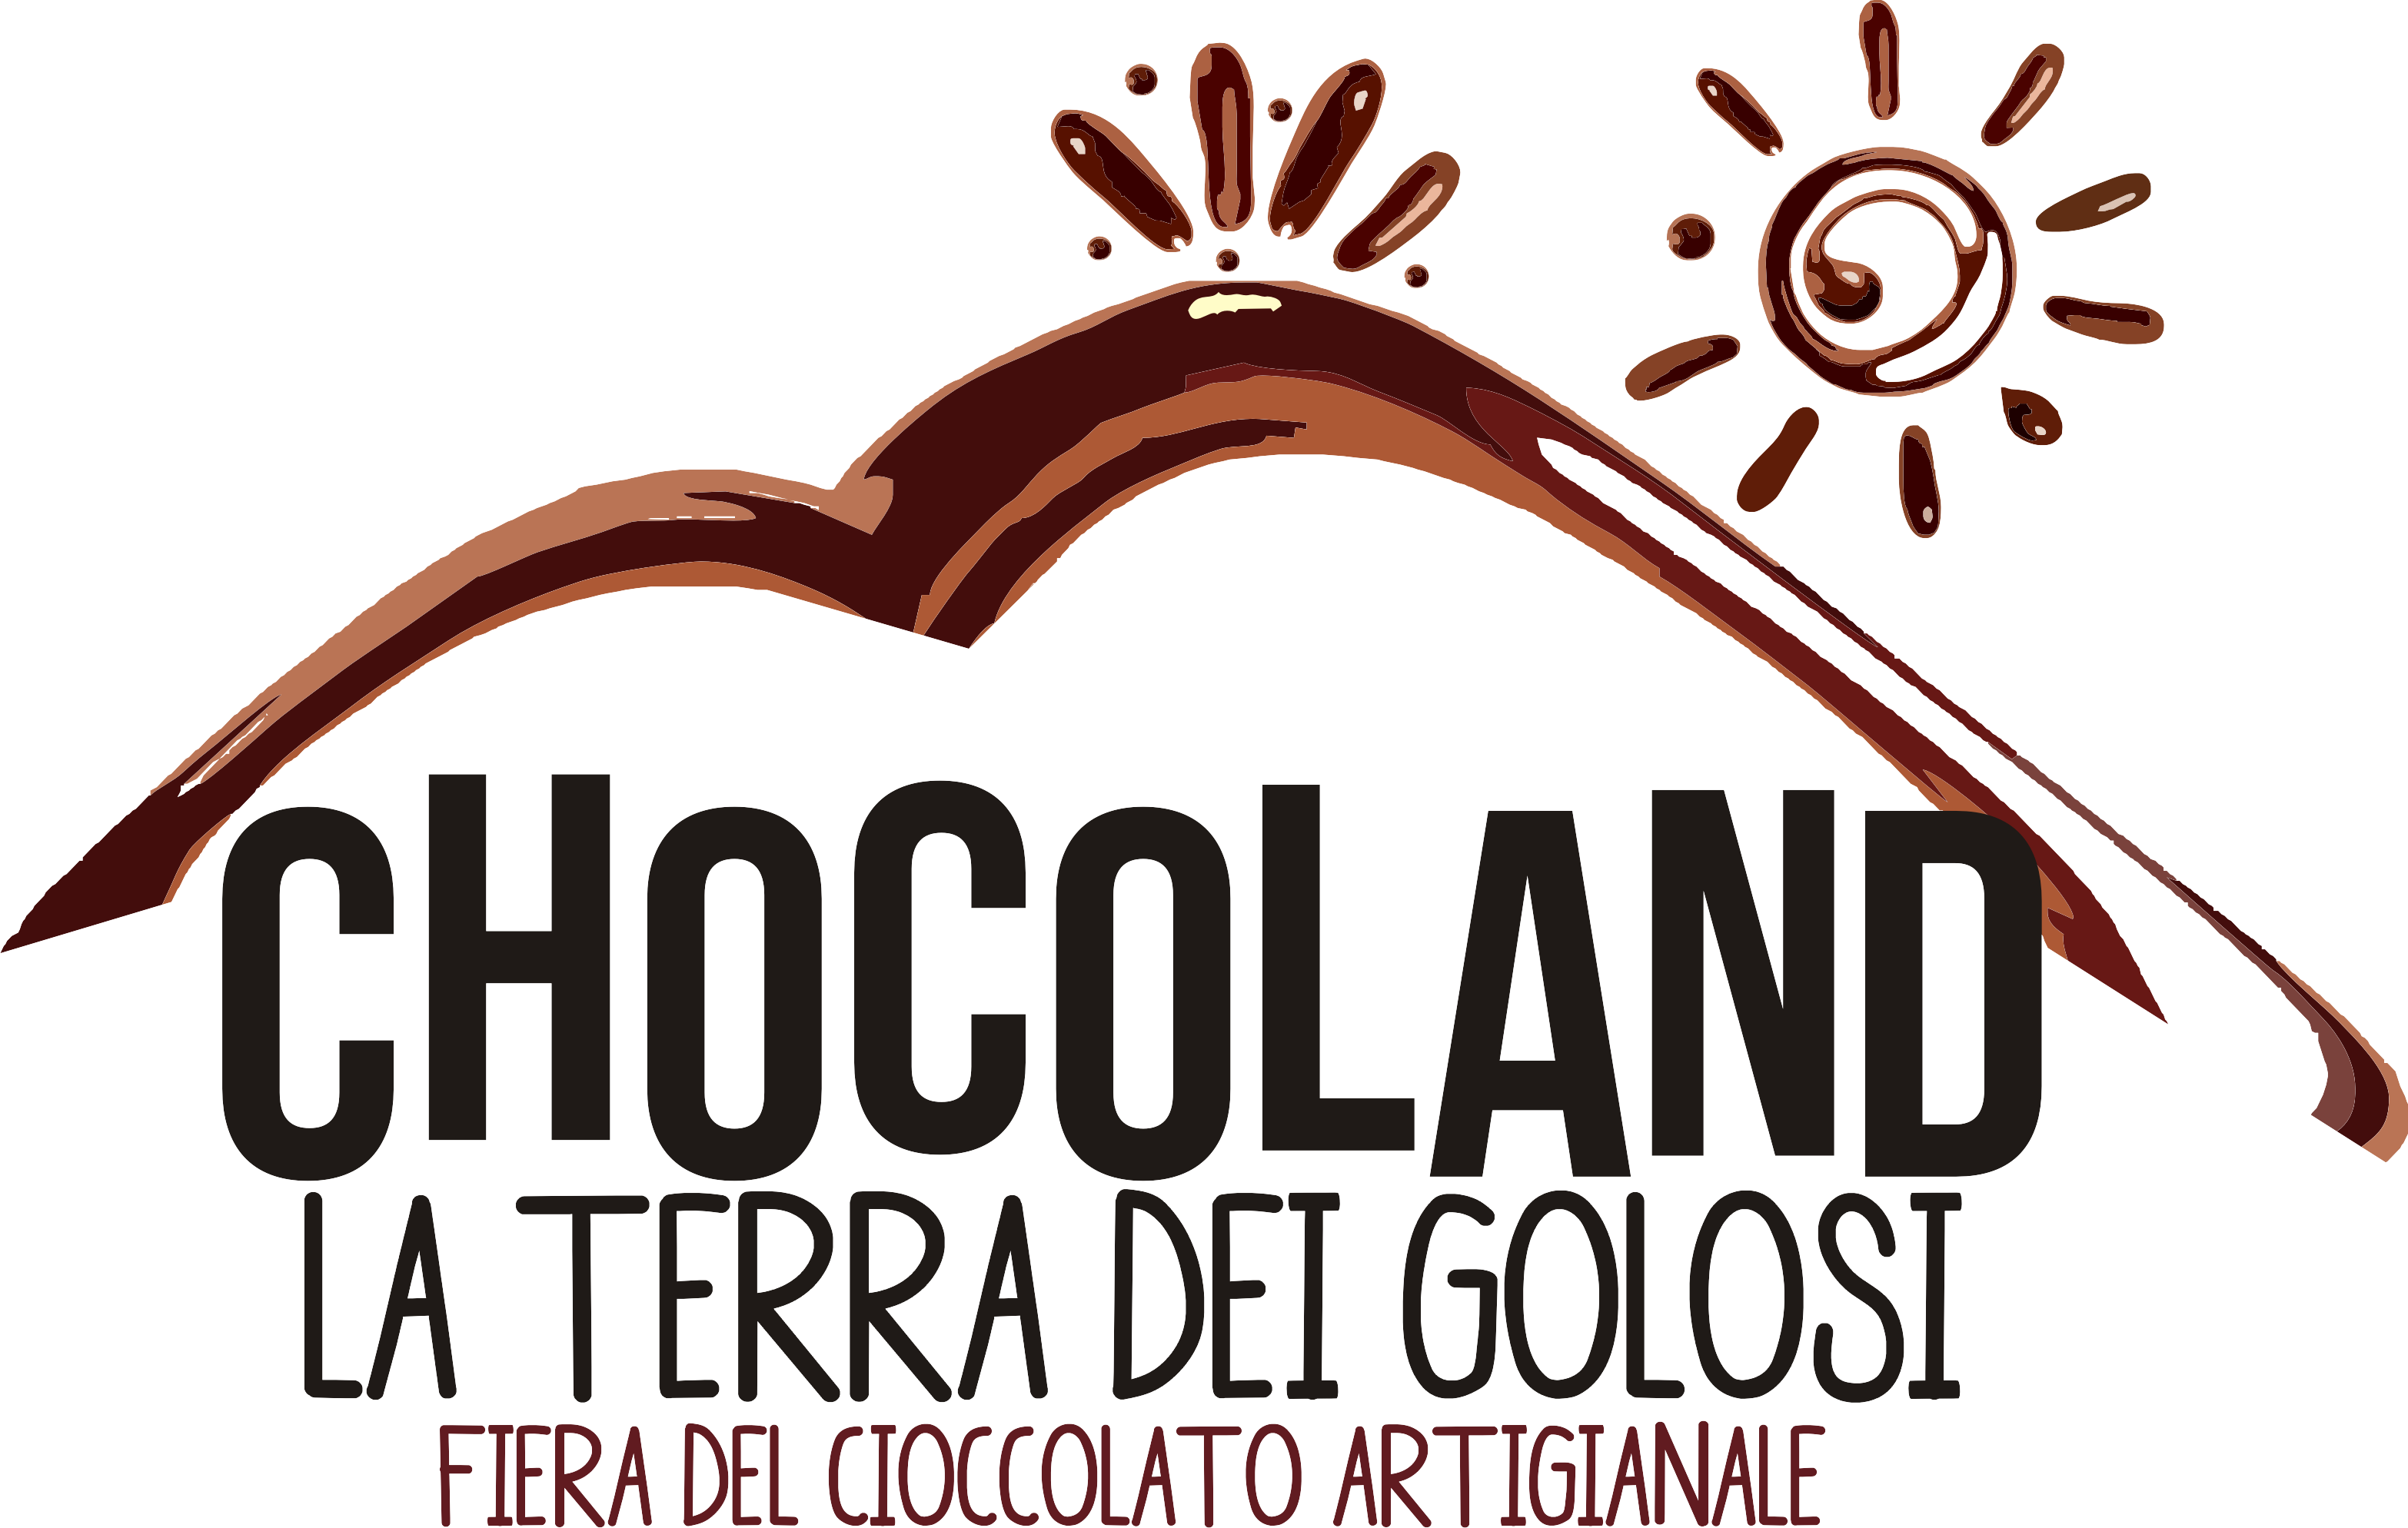 Repubblica: I 450.000 del Chocoland